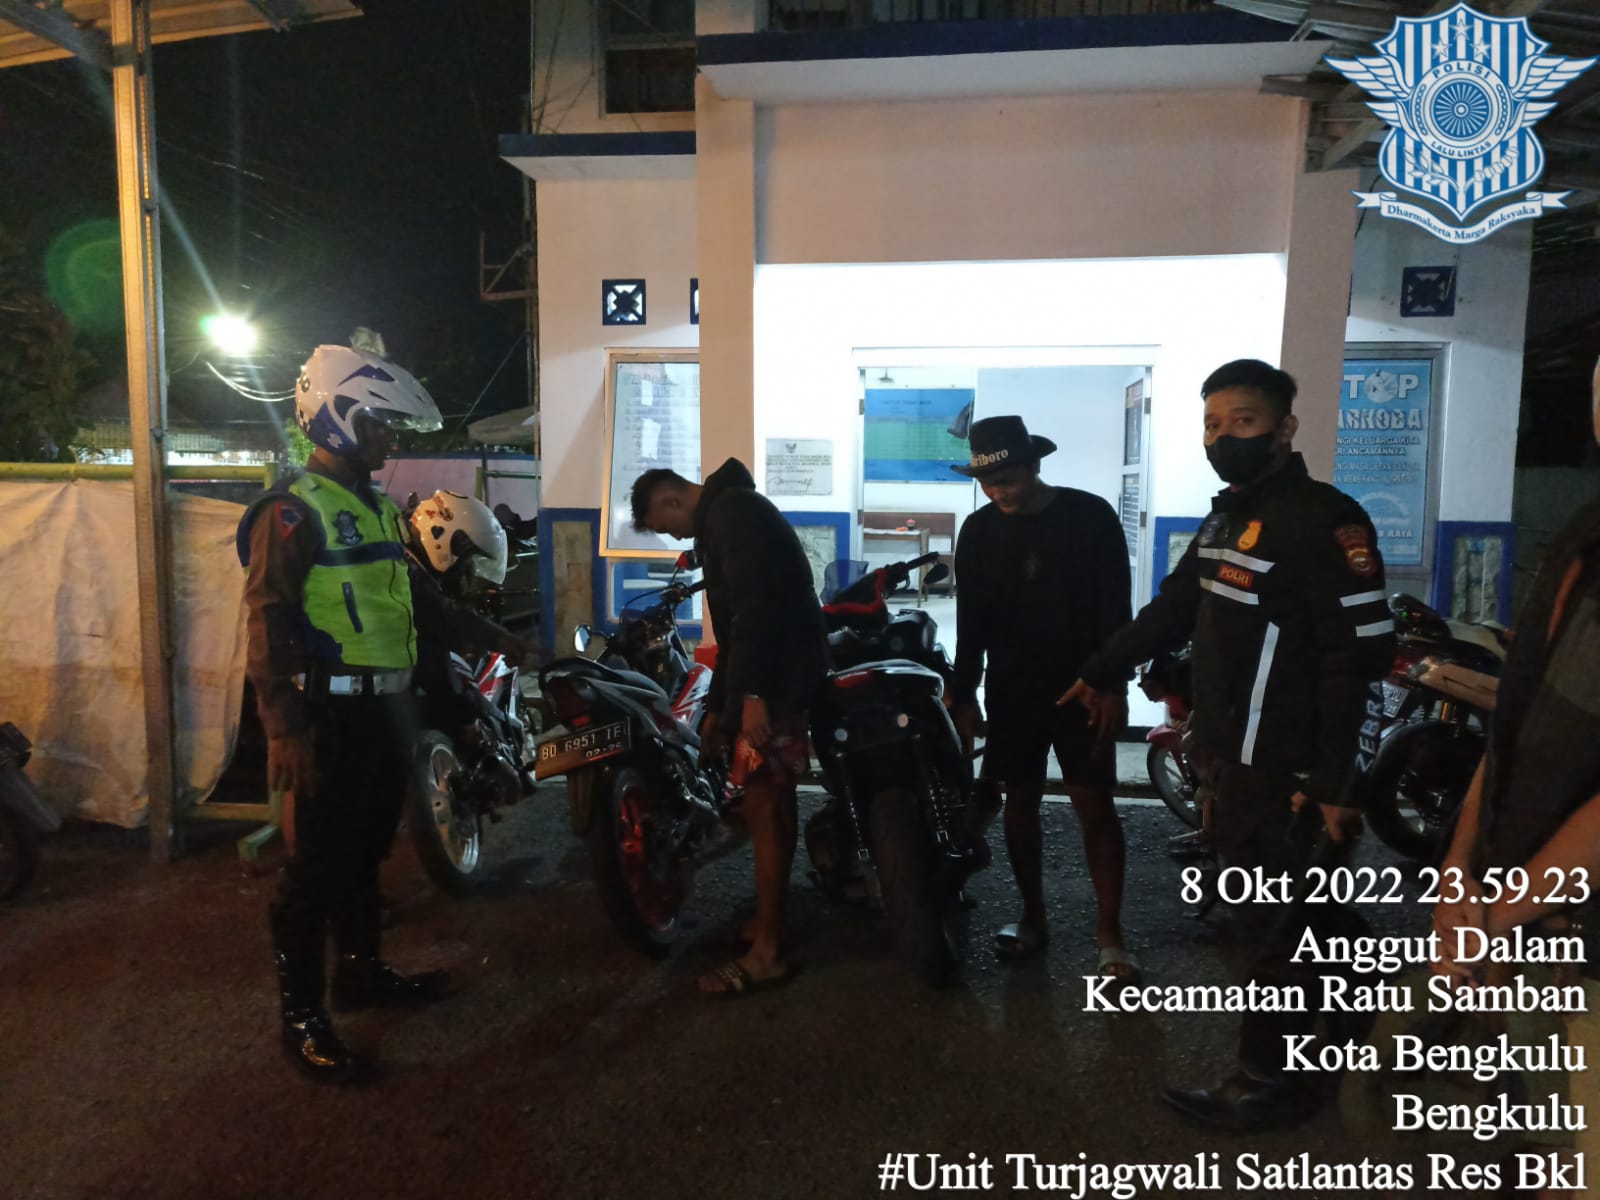 Pemprov Bengkulu Bakal Gelar Kompetisi Drag Bike, Kasat Lantas Polres Bengkulu: Solusi Cegah Balap Liar 